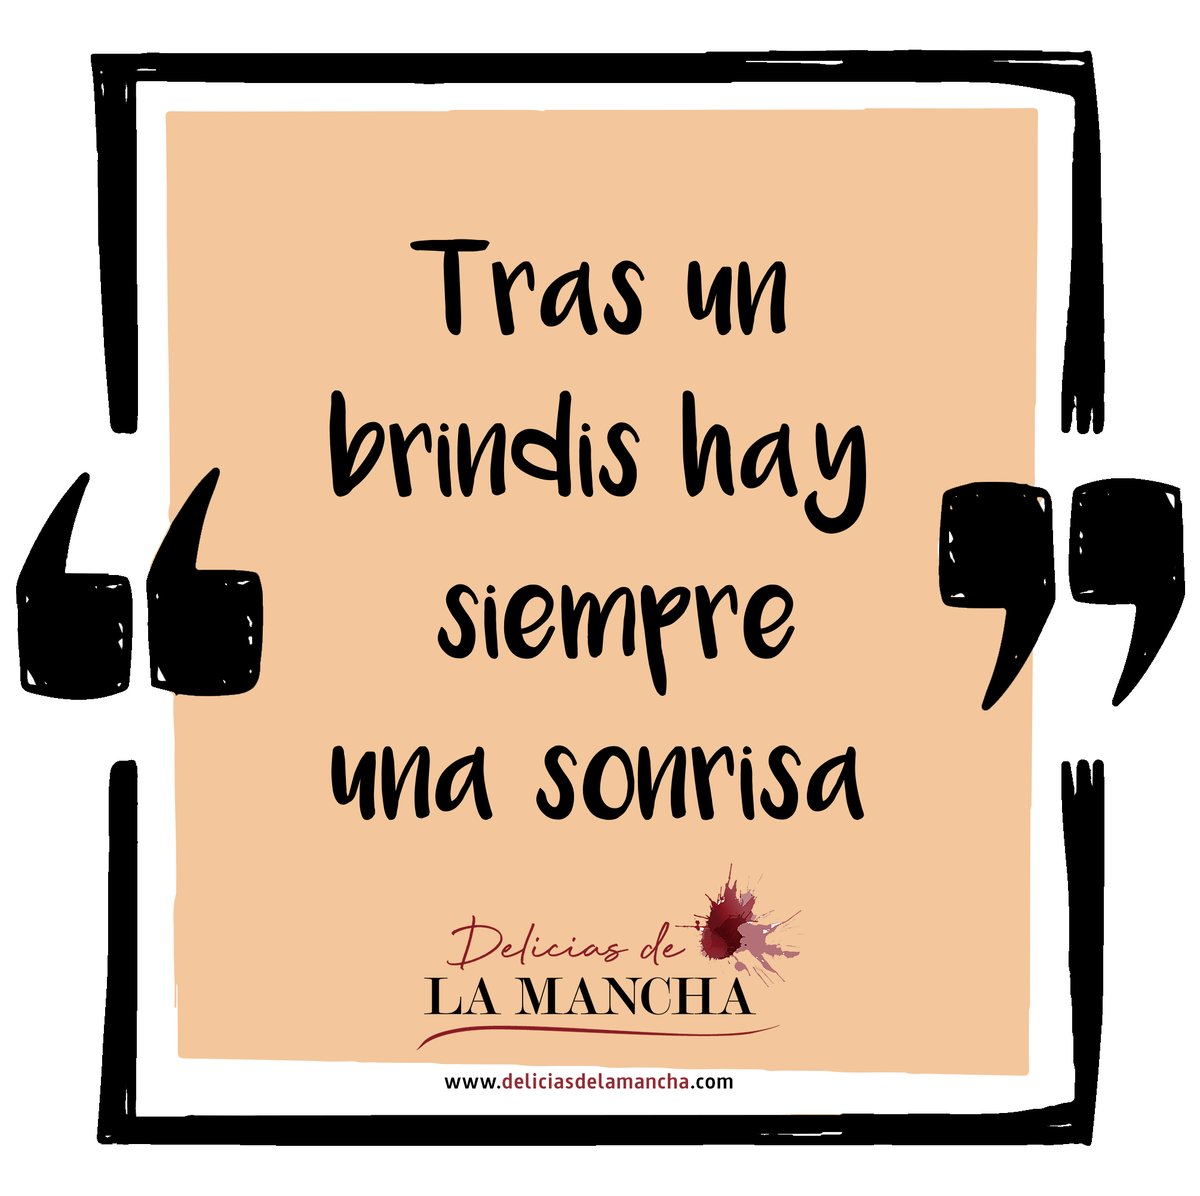 ¿Qué hay siempre tras un brindis 🥂?
.
¡Una sonrisa1 ✅
.
#deliciasdelamancha #brindis #vinosdecalidad #vinosdelamancha #winelover #sonreir #LaMancha